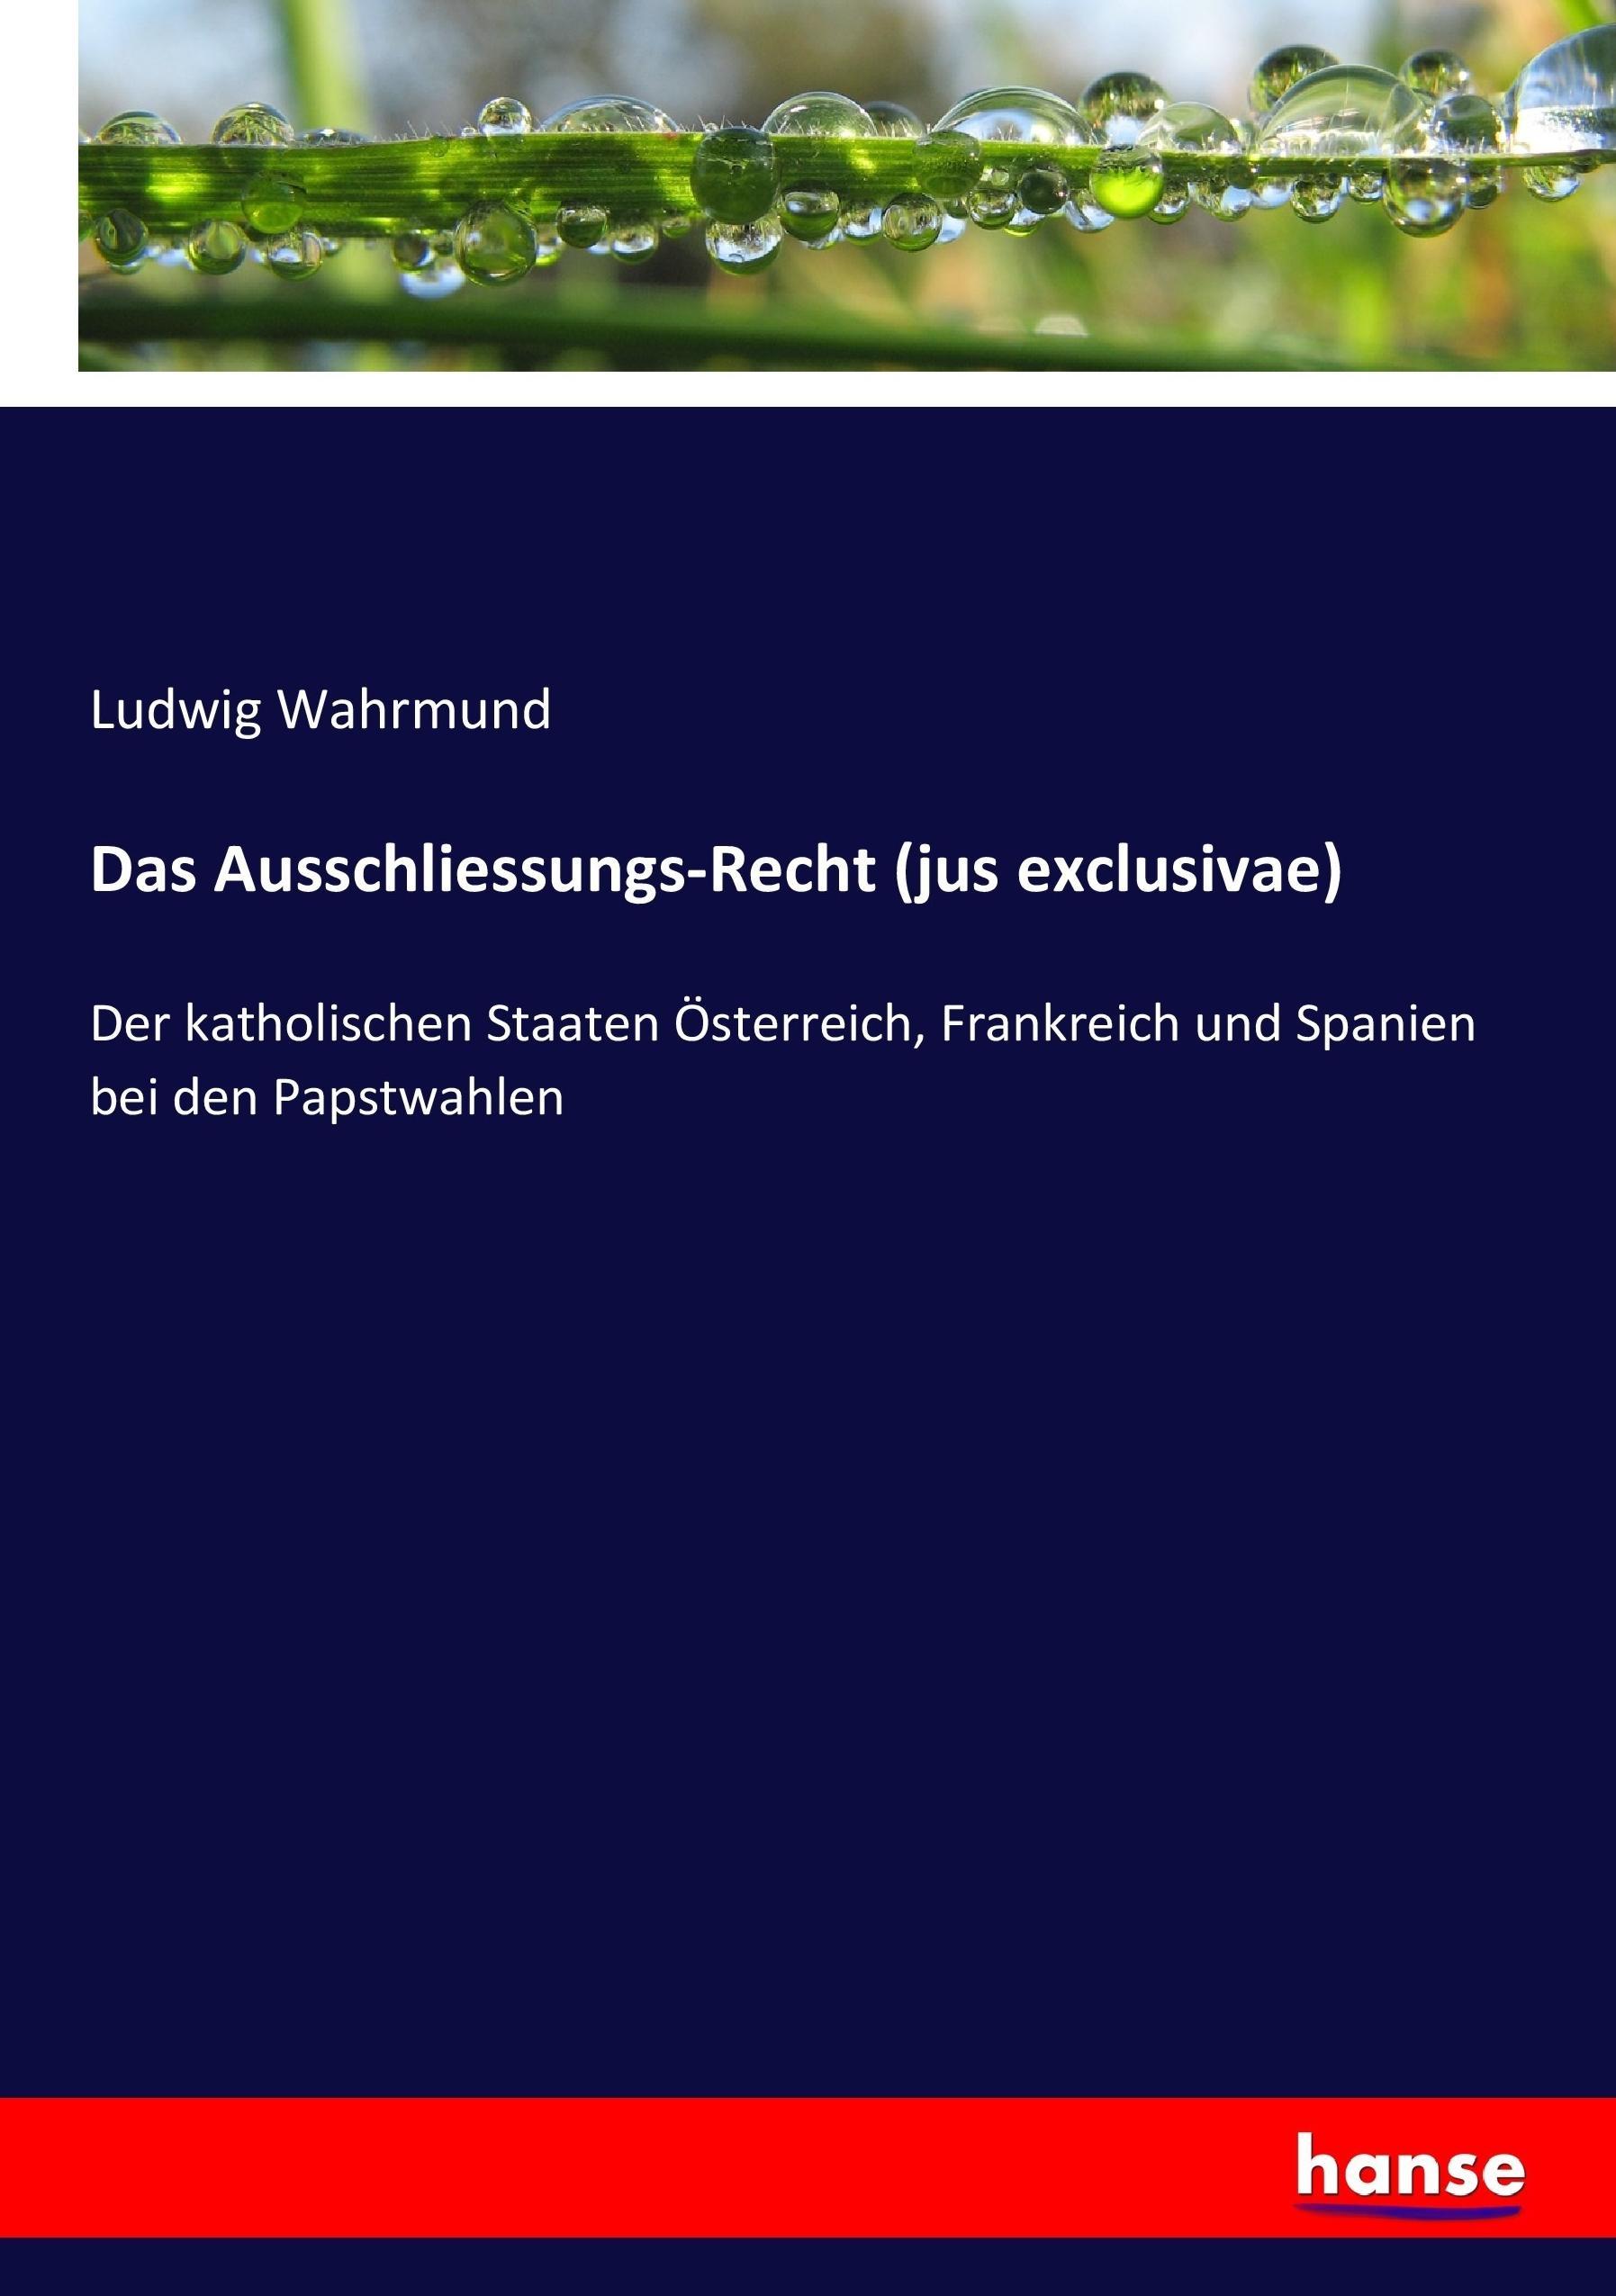 Das Ausschliessungs-Recht (jus exclusivae) - Wahrmund, Ludwig